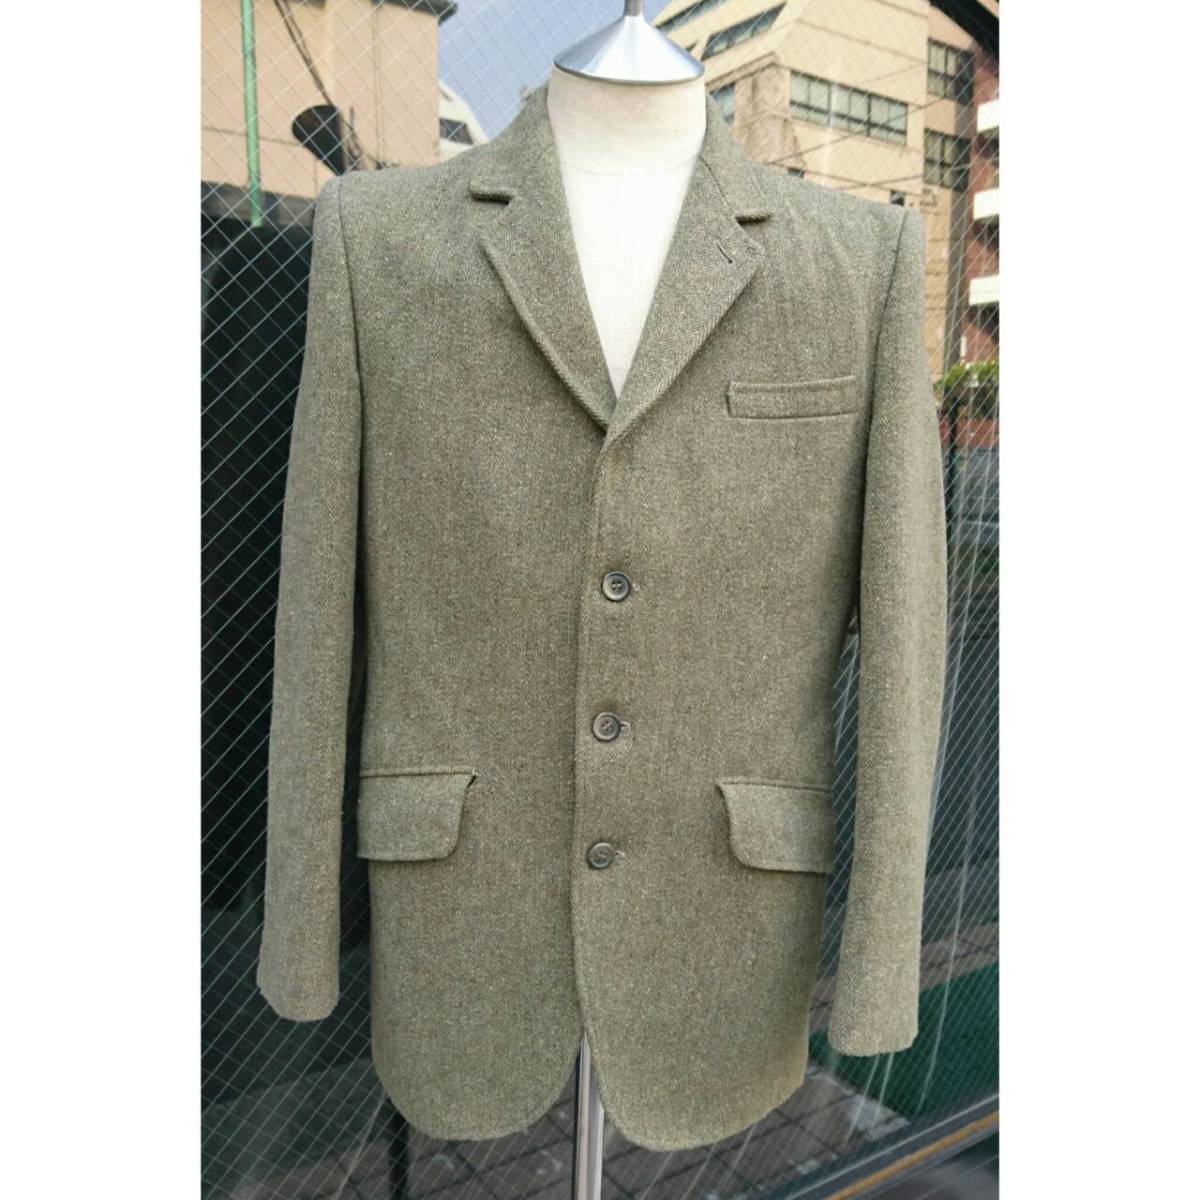 イギリス古着 ChristopherDawes Tweedjacket tweed jacket vintage ツイードジャケット ジャケット ツイード DERBYTWEED 古着 英国 MV518